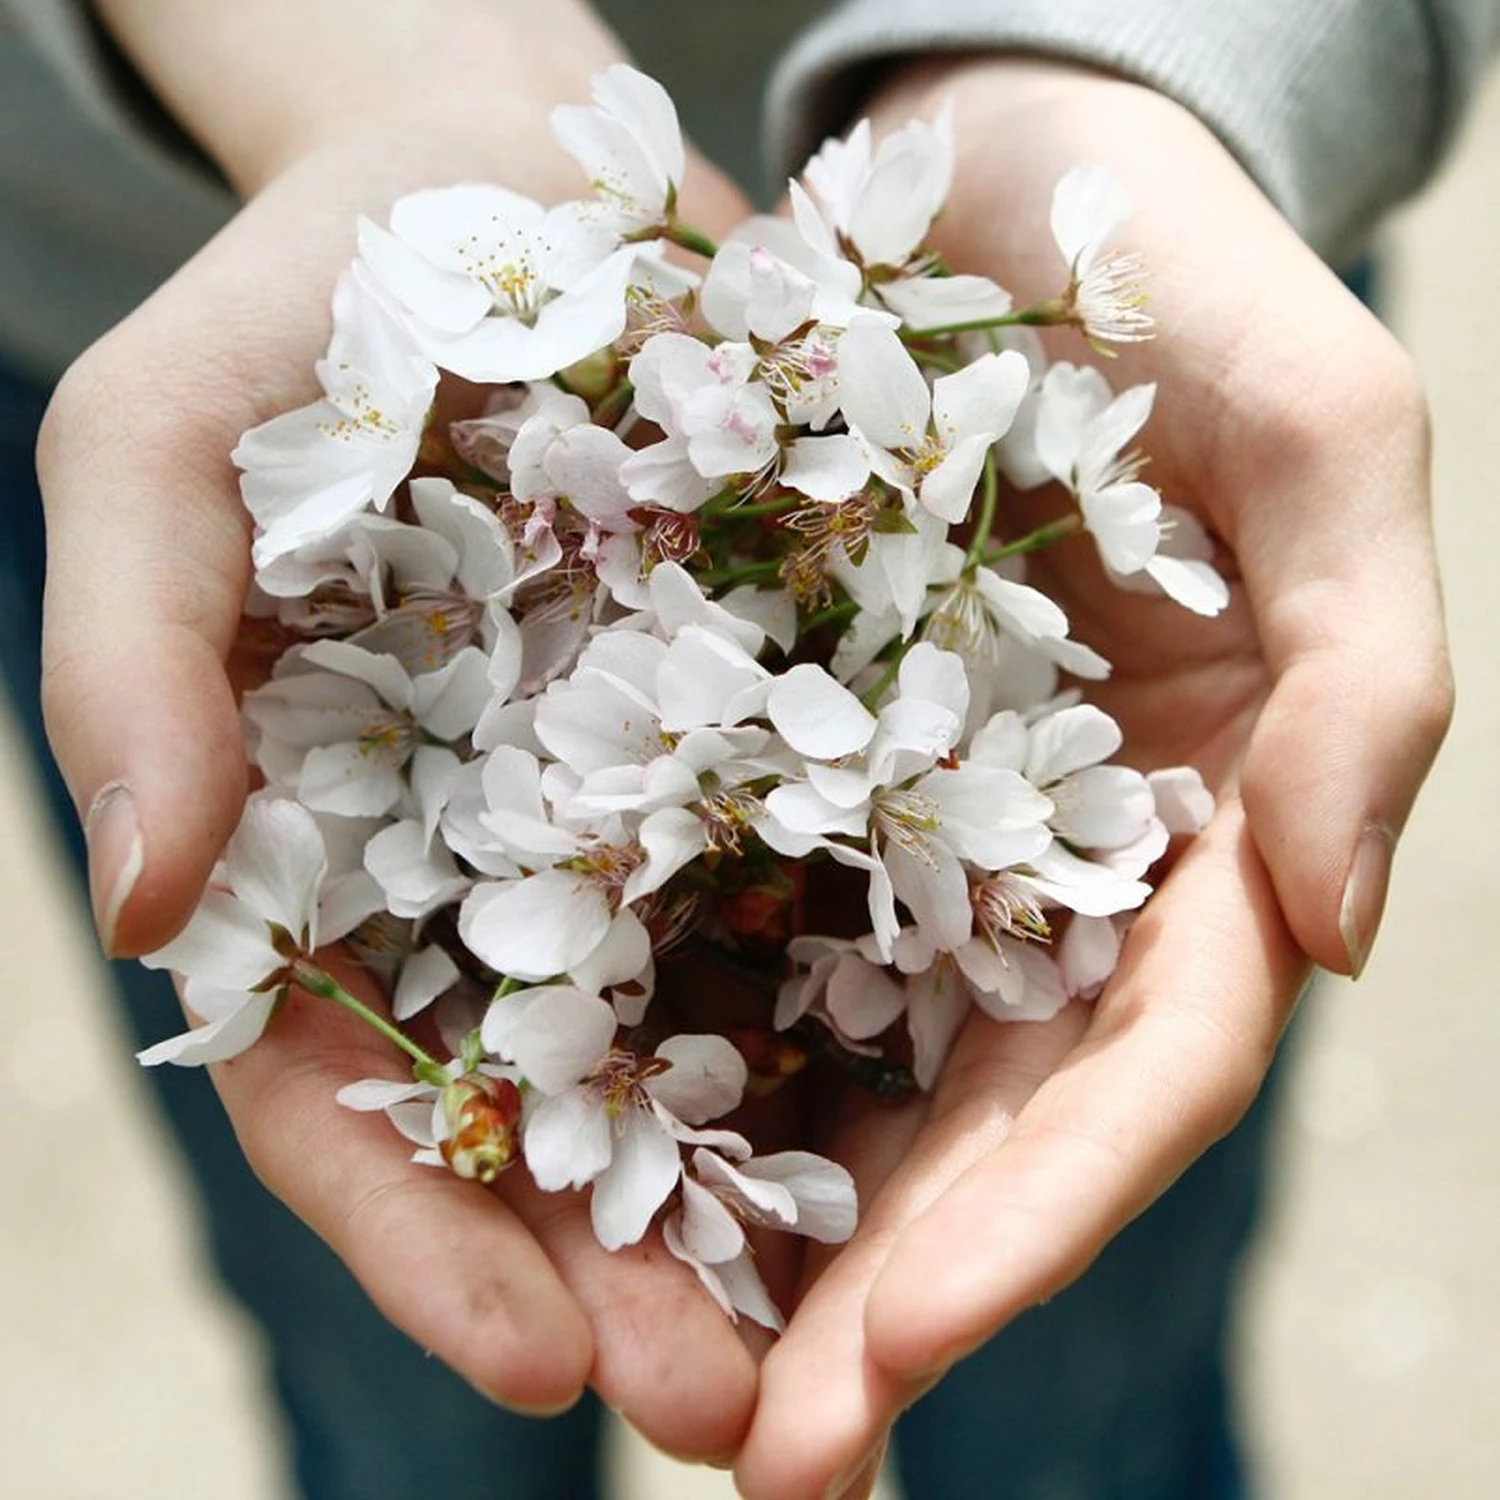 Blumen in der Hand einer Person